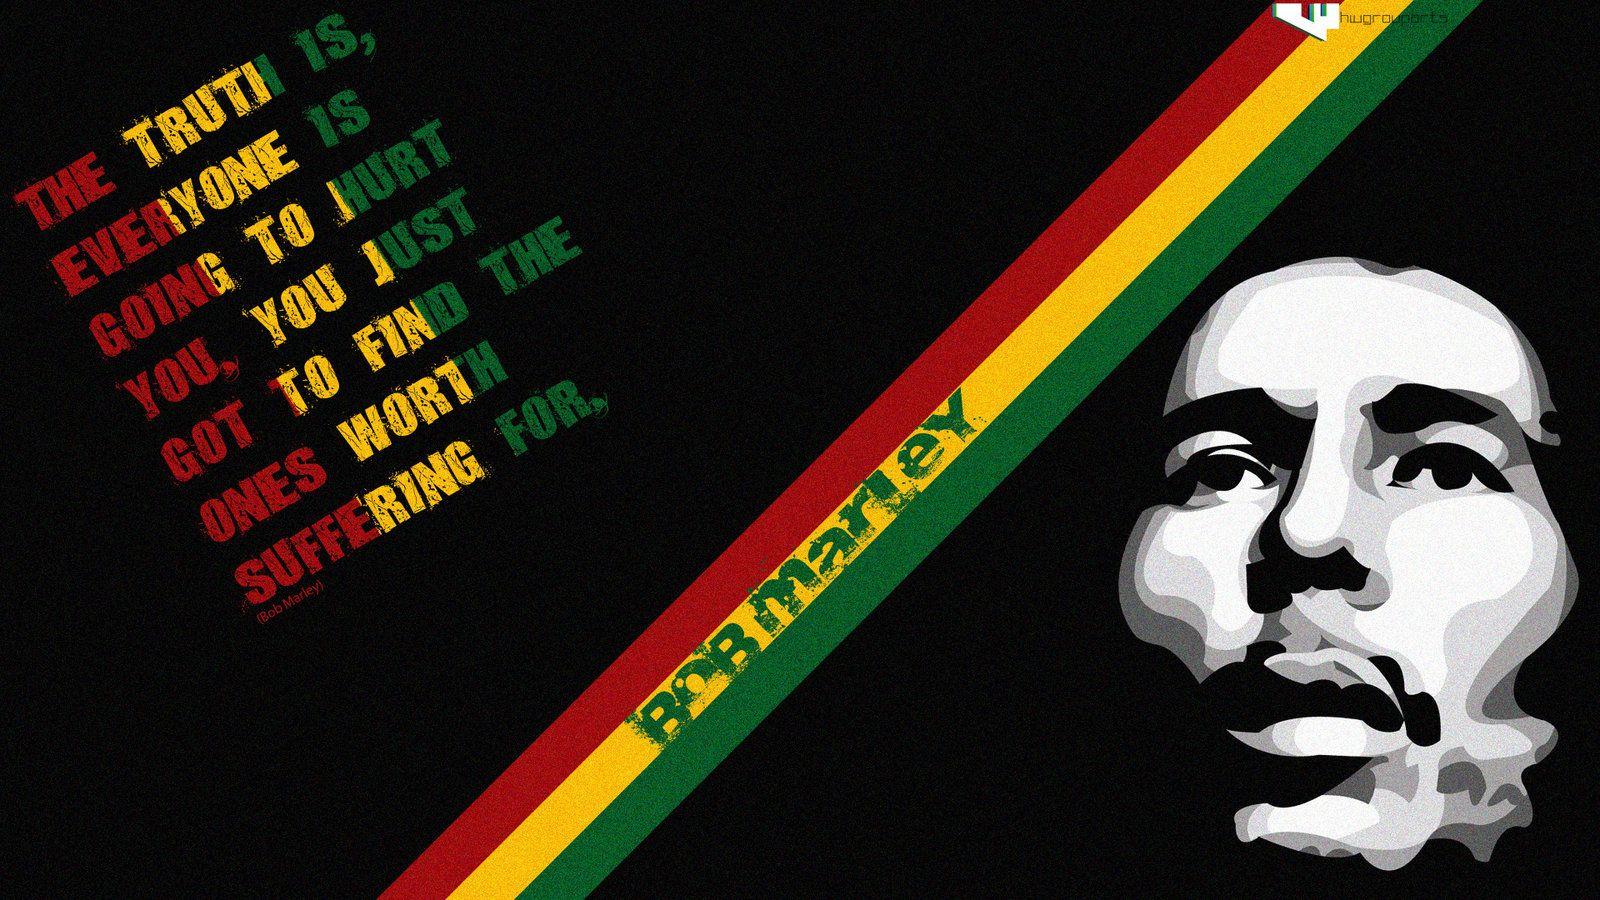 Bob Marley HD Image Download